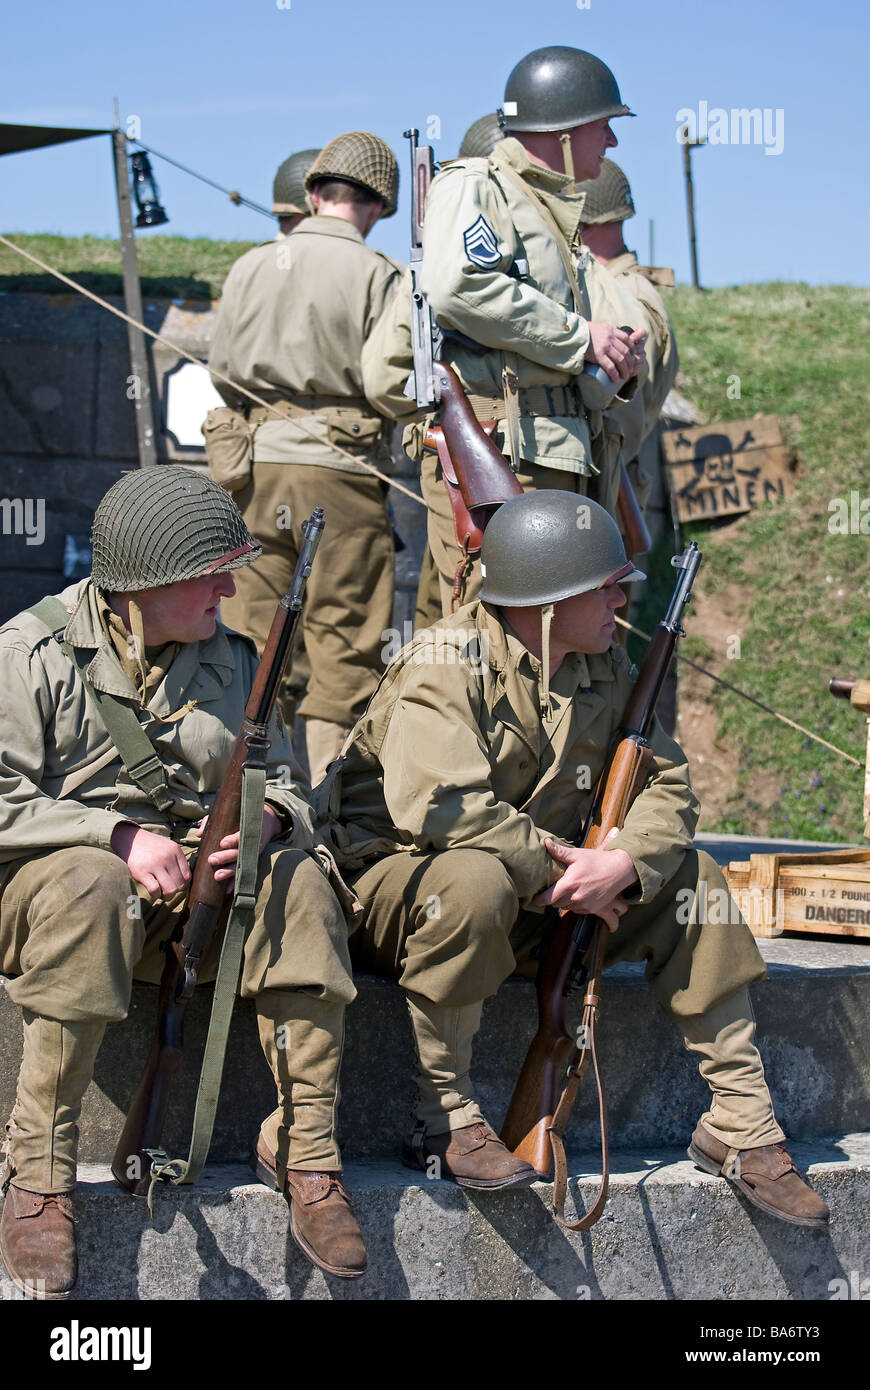 Gruppo di WW2 soldati americani con fucili a canna rigata. Foto Stock